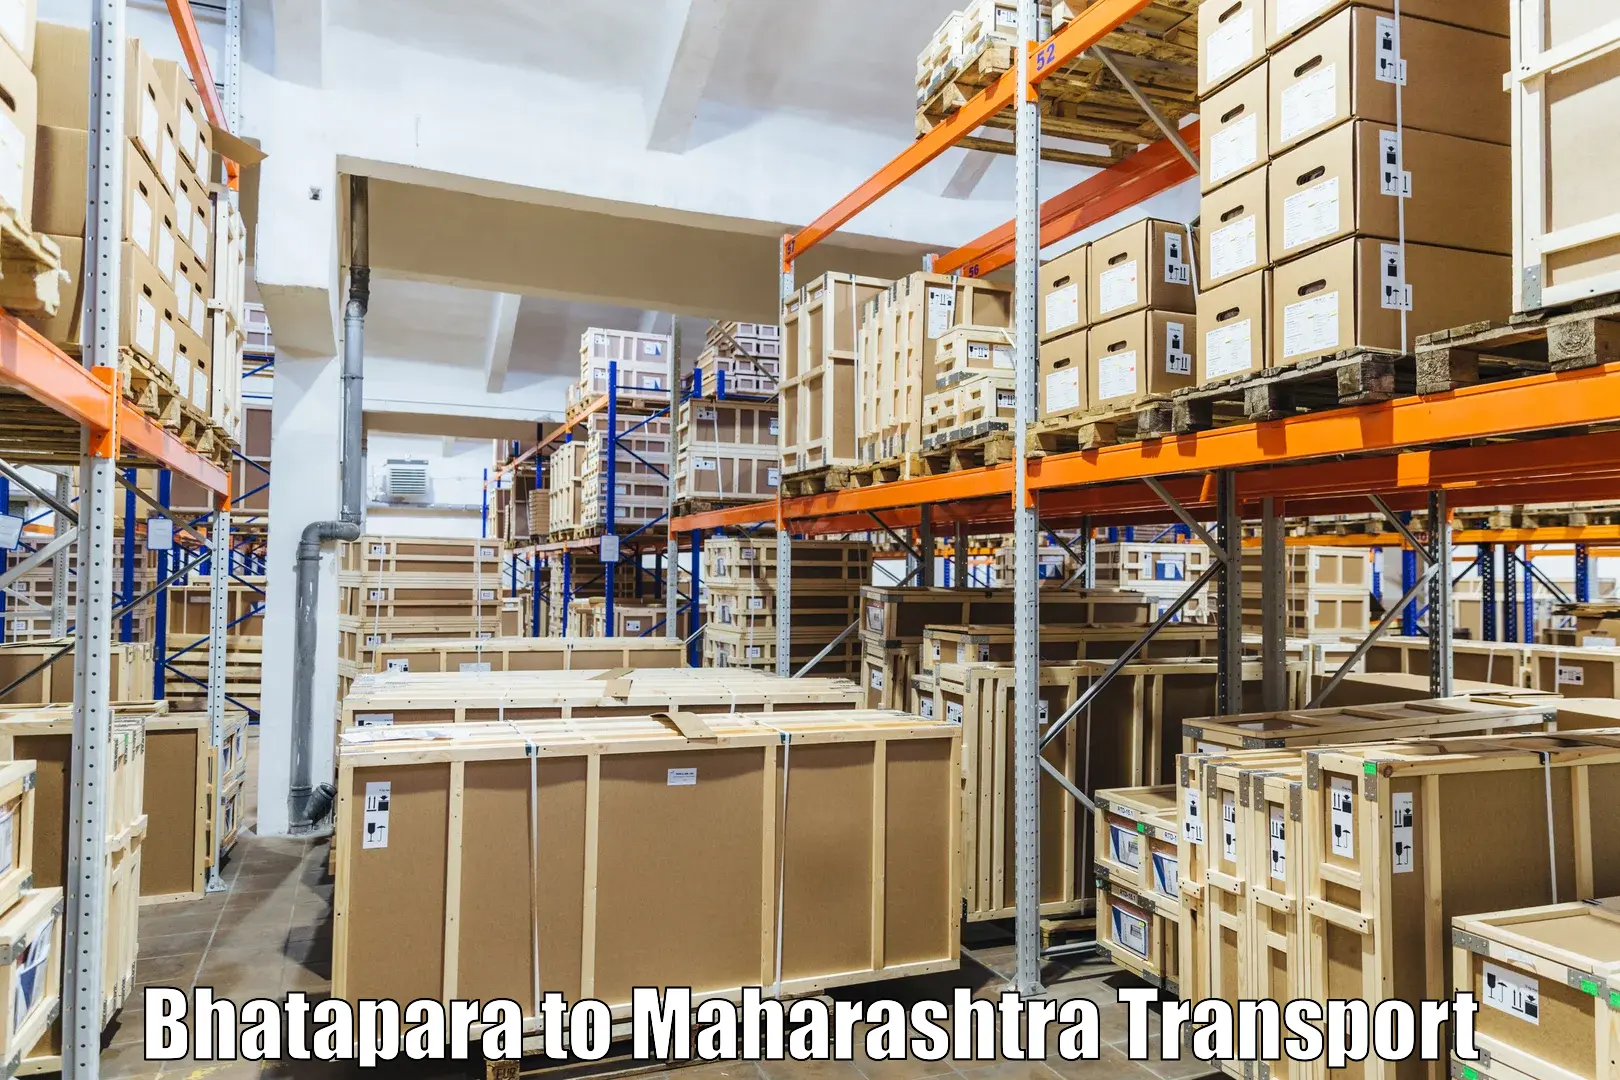 Furniture transport service Bhatapara to Dhule